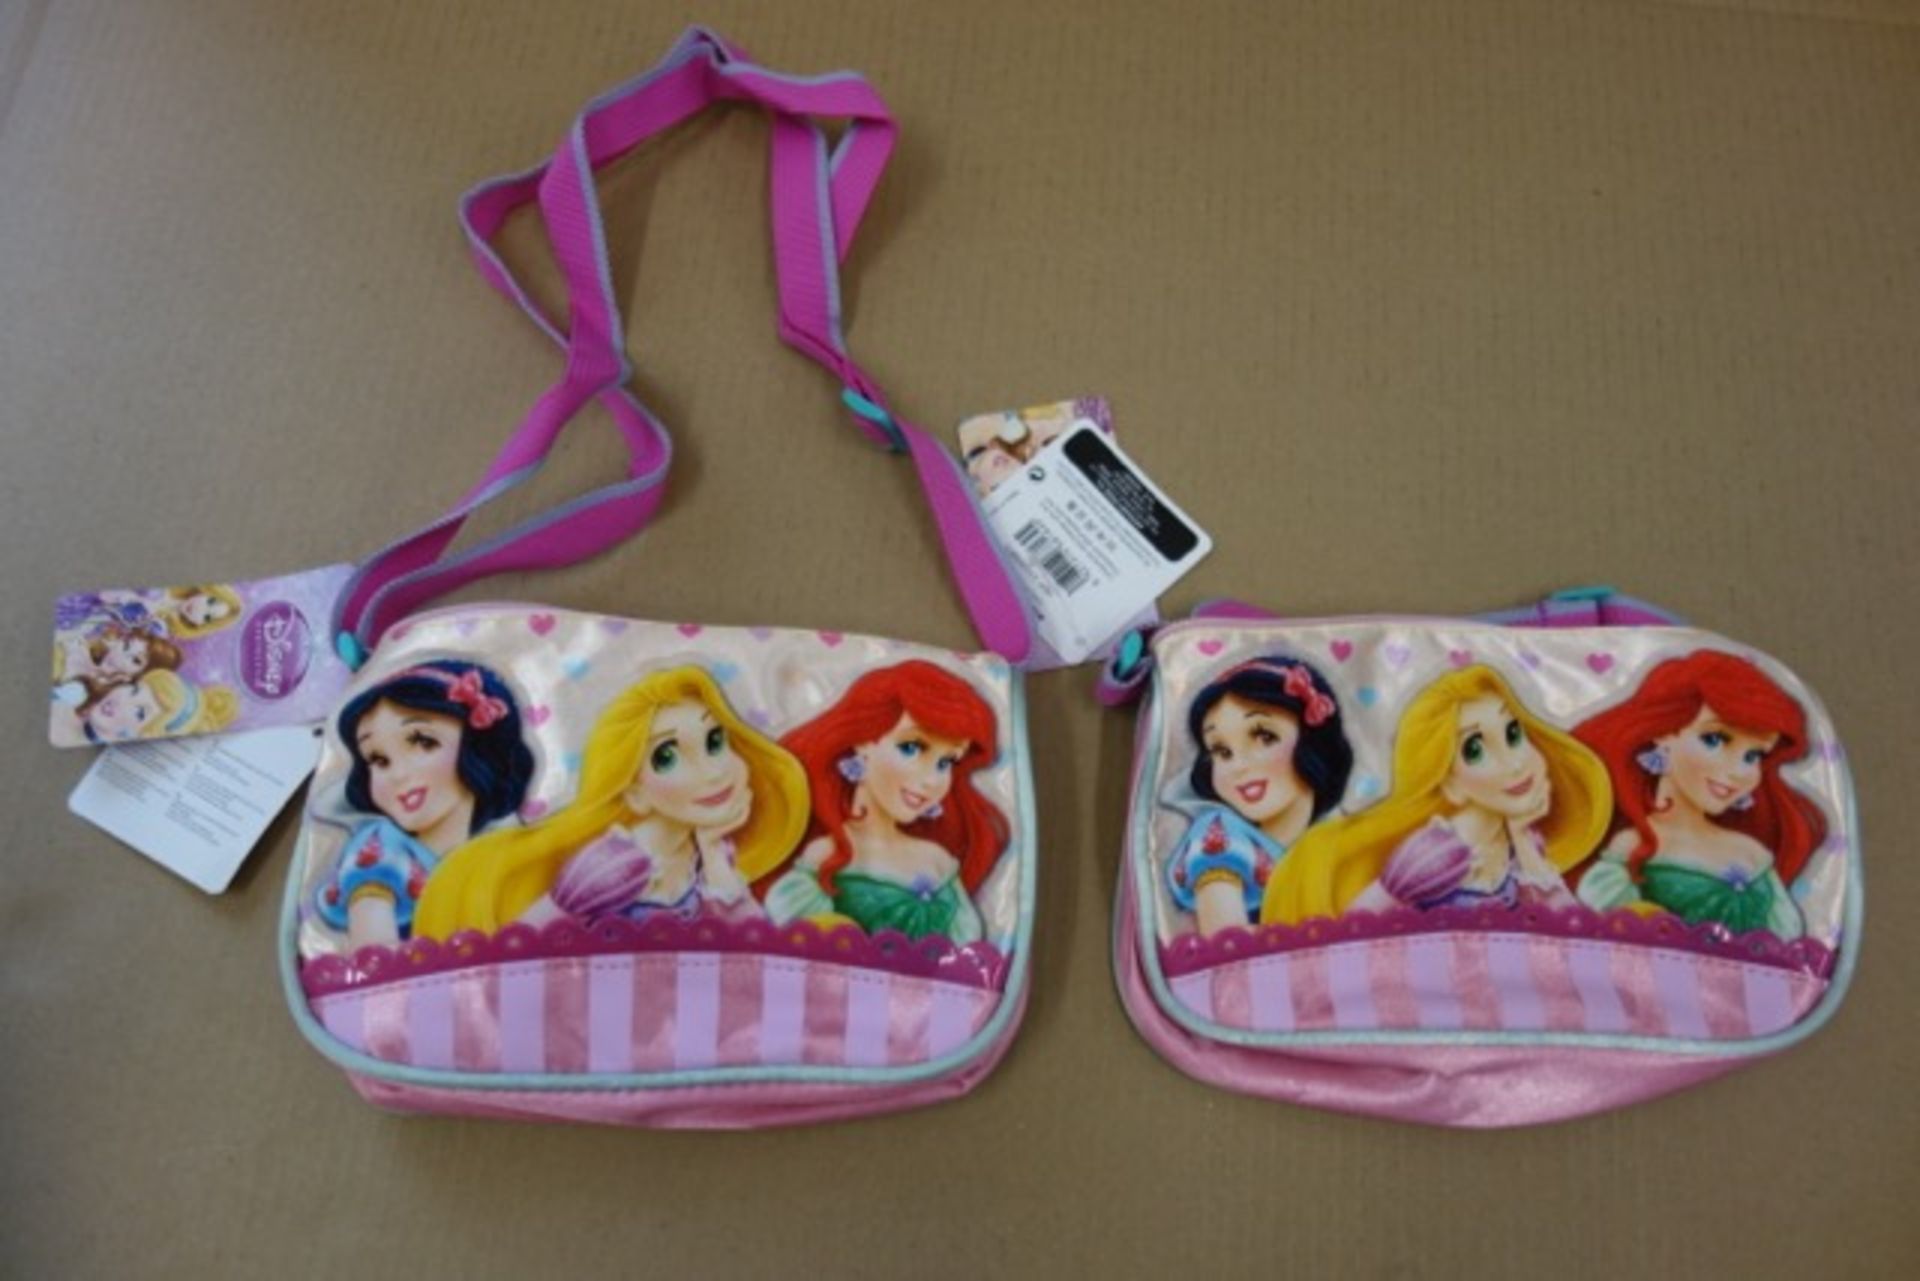 72 x Disney Princess Shoulder Bag's. High quality design. Original RRP £11.99 each, giving this